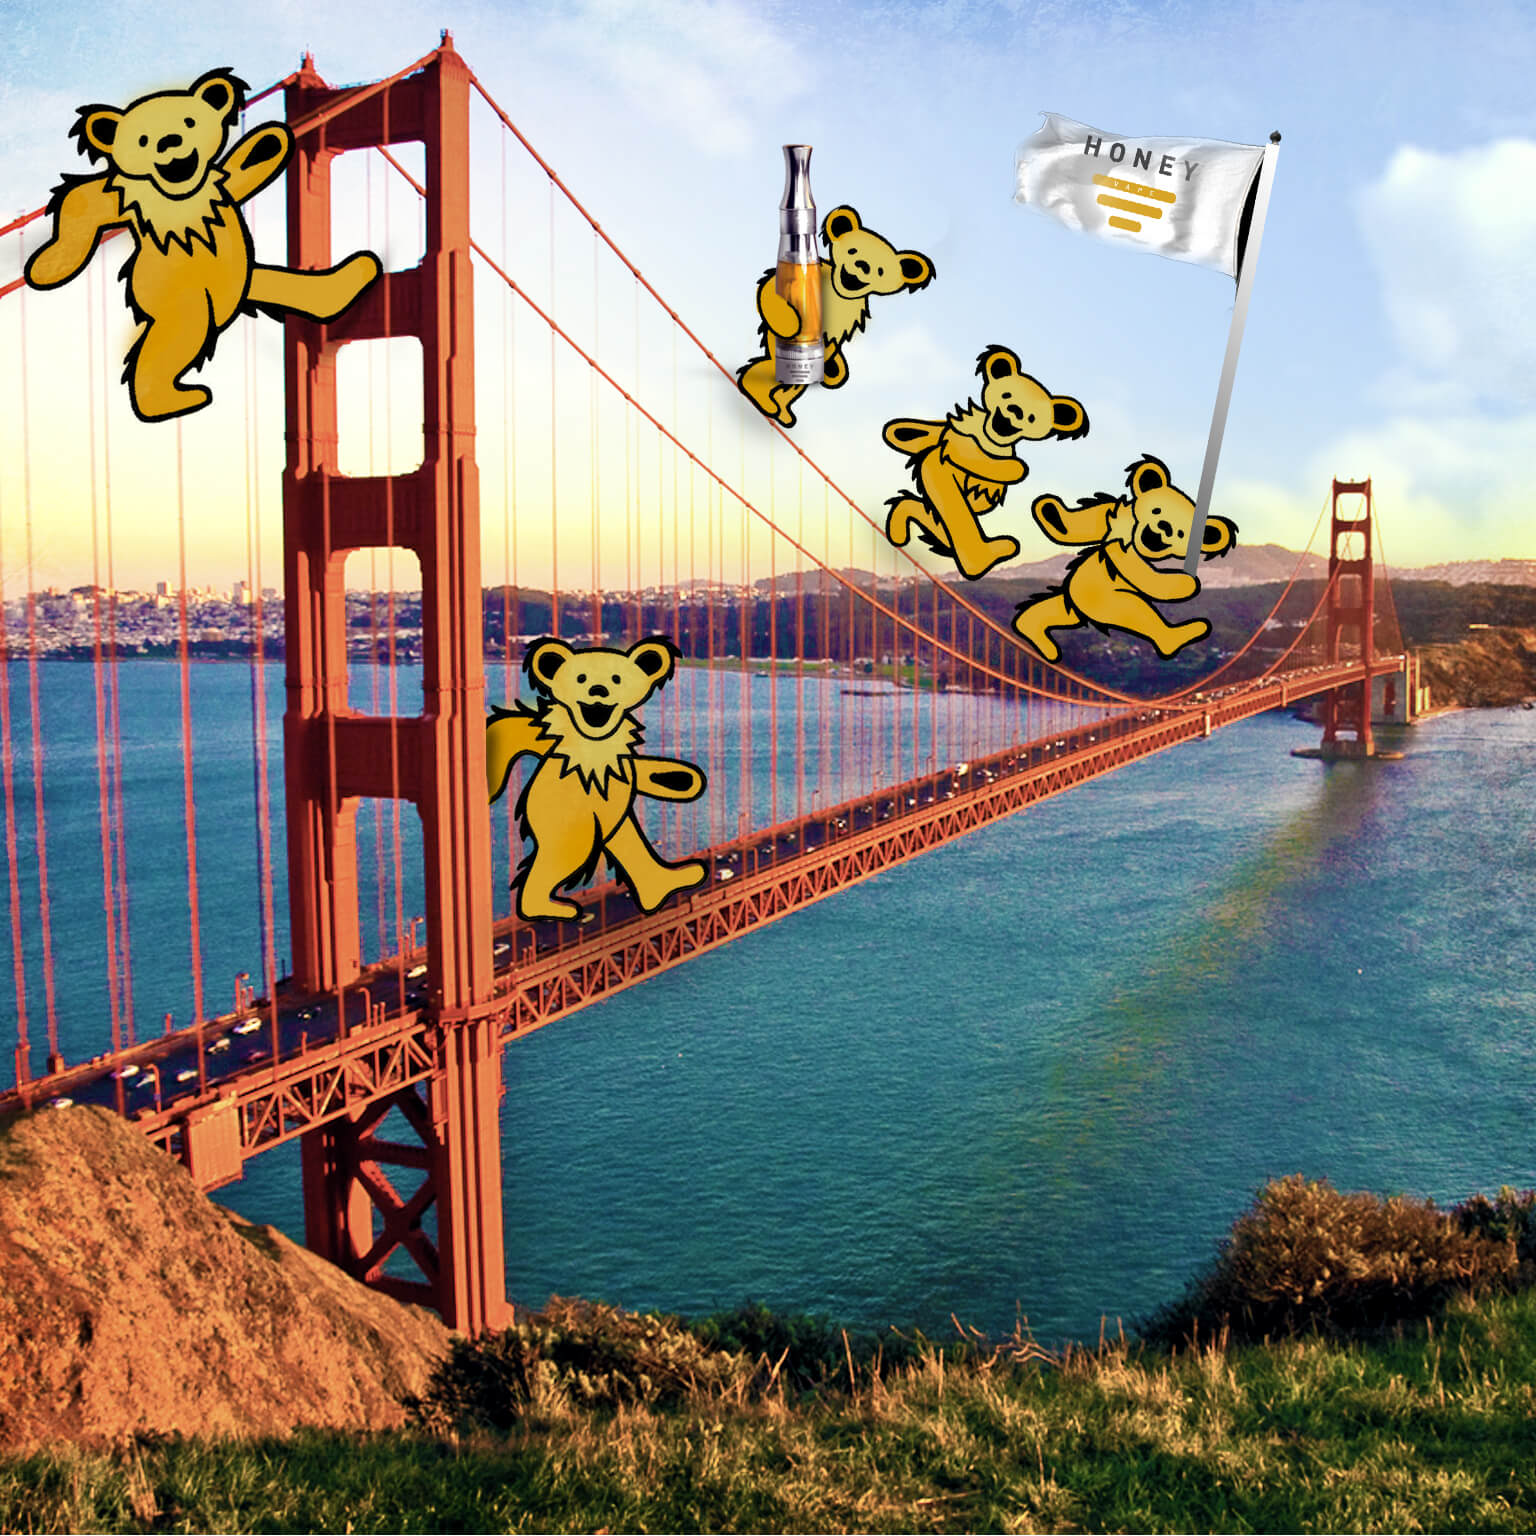 HoneyVape Bears San Francisco Bridge High Times Cannabis Cup